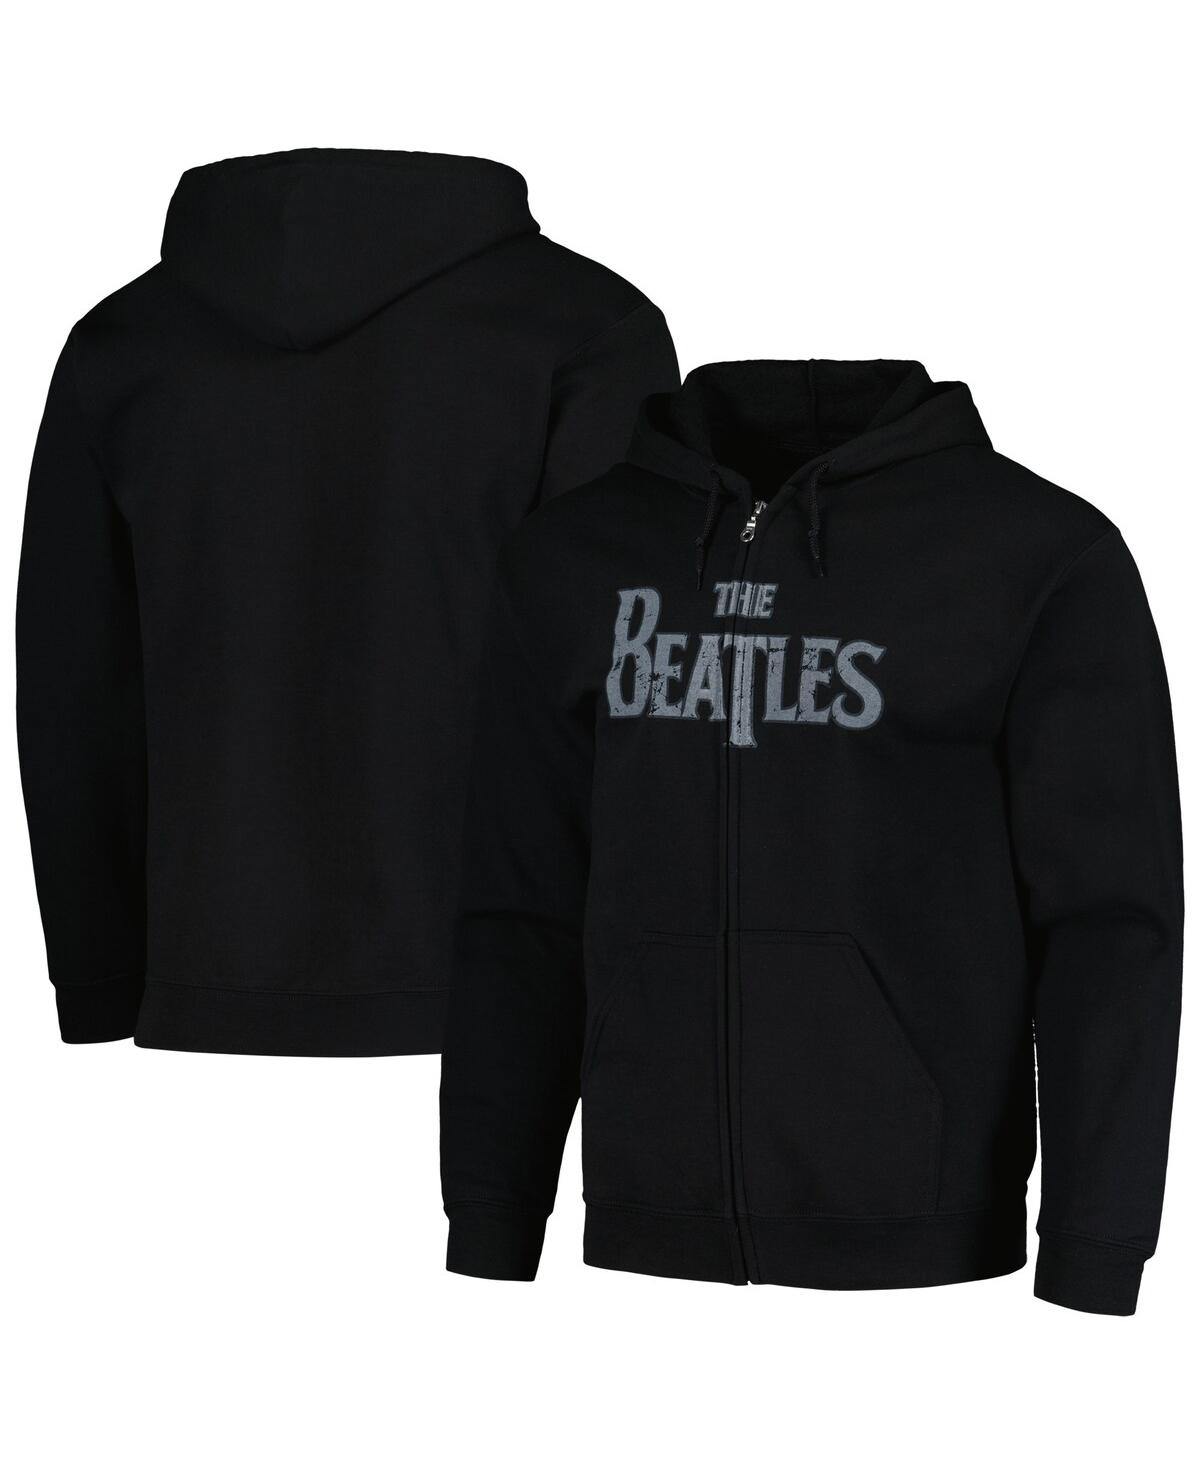 Men's and Women's Black Distressed The Beatles Vintage-Like Logo Hoodie Full-Zip Sweatshirt - Black